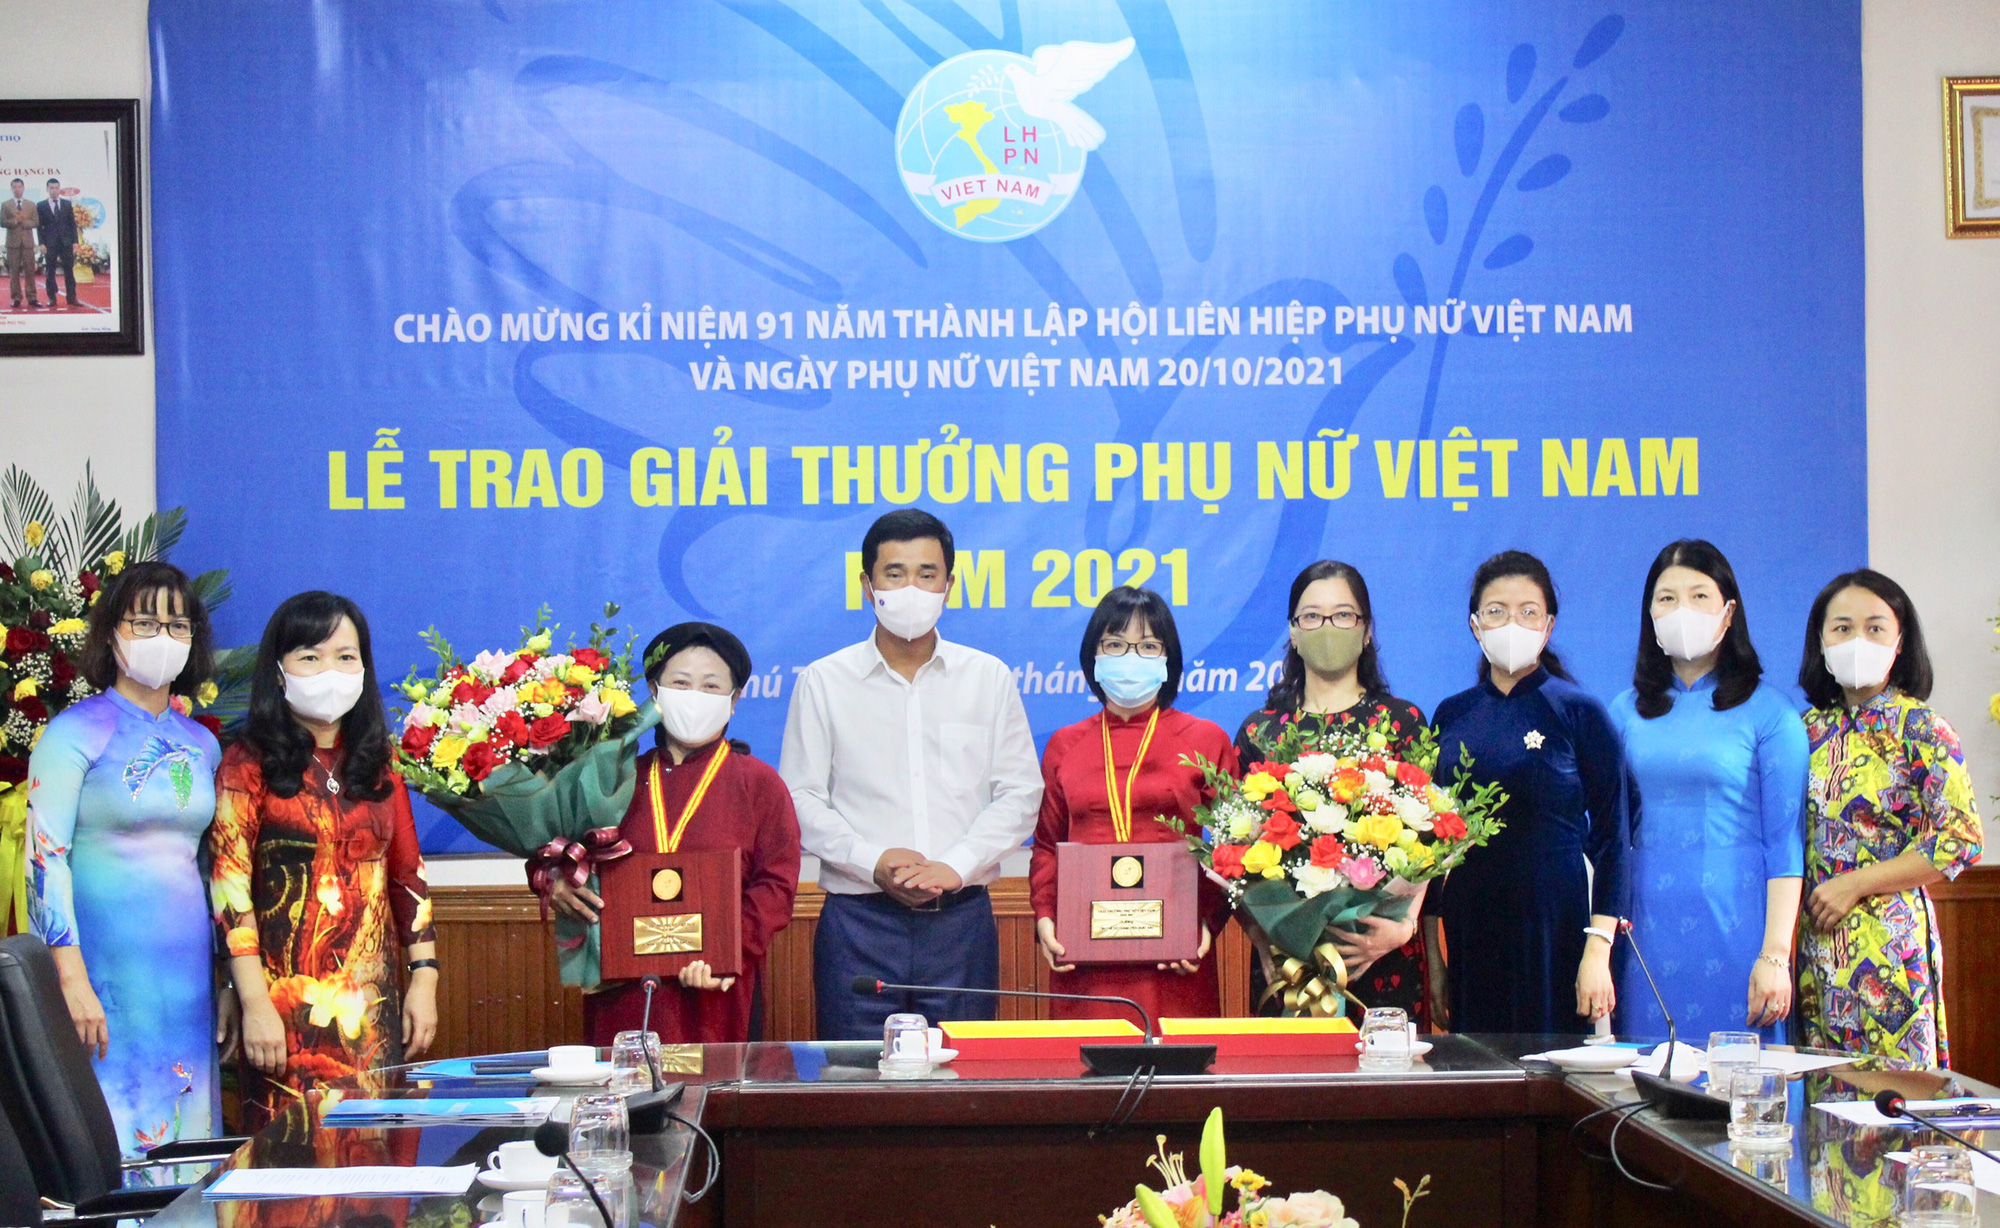 Bảo tồn di sản văn hóa hát Xoan, nghệ nhân Phú Thọ được trao tặng giải thưởng PNVN  - Ảnh 1.